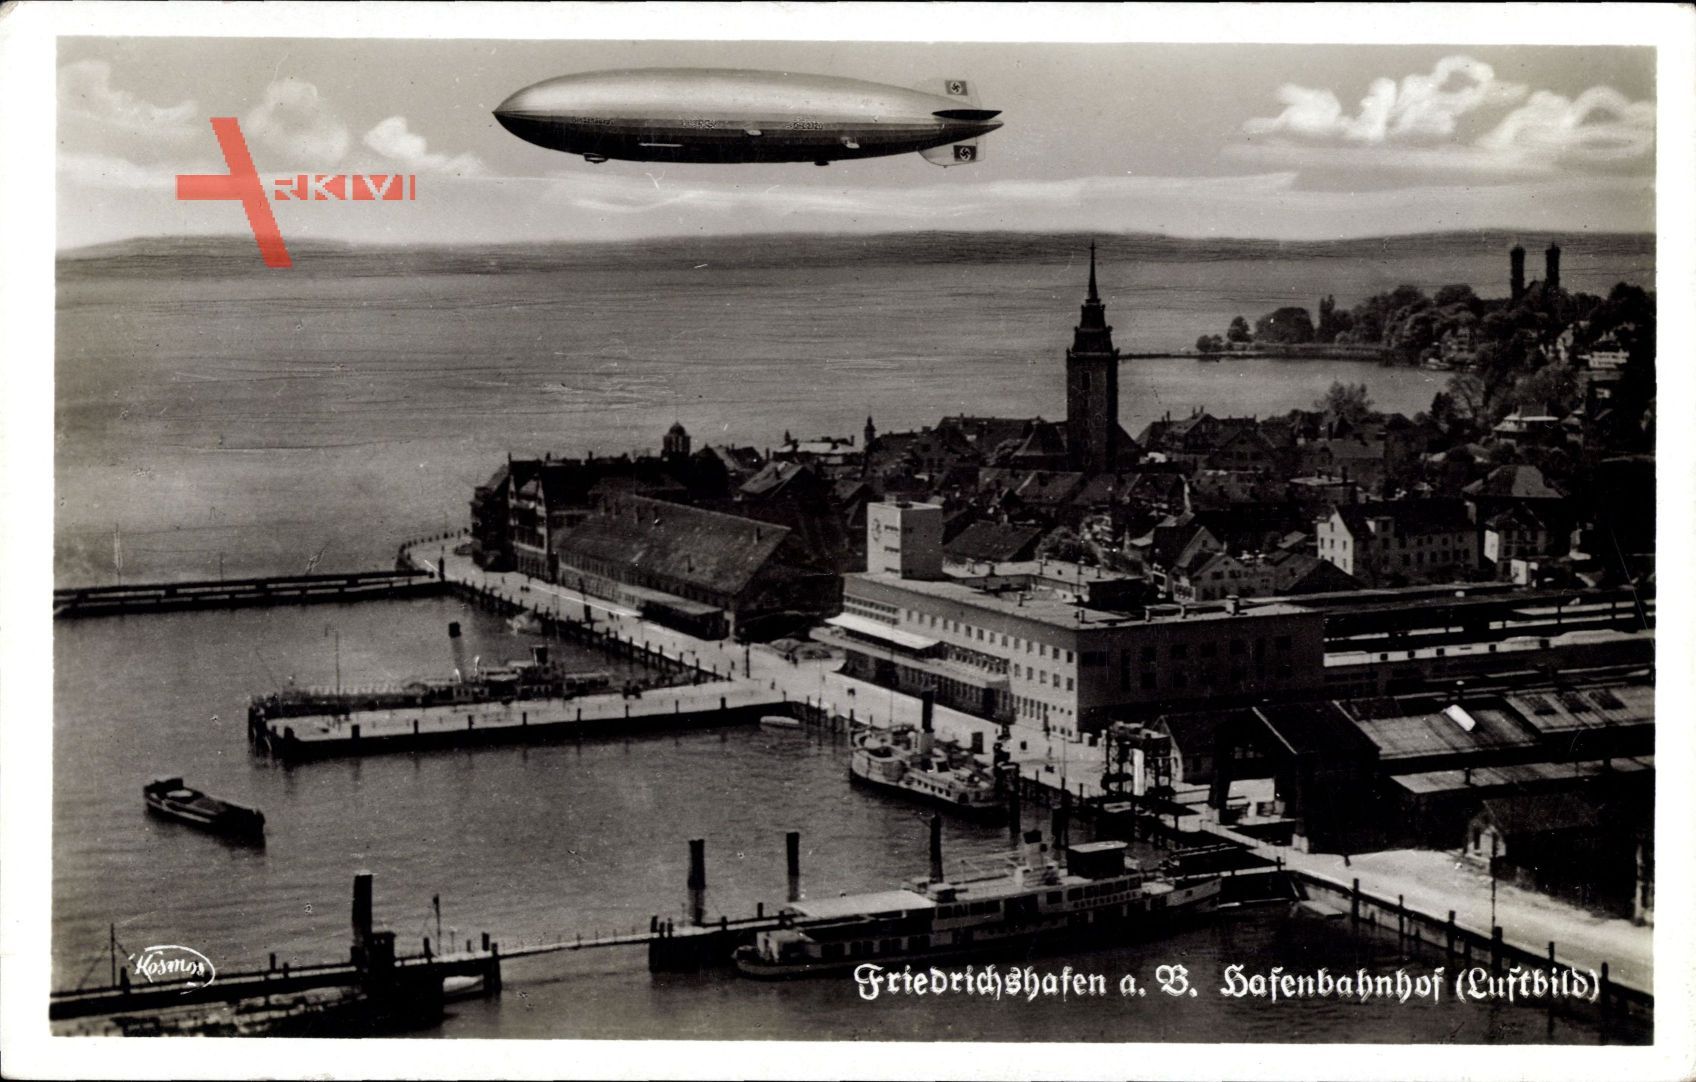 Friedrichshafen Bodensee, Hafenbahnhof, Luftbild, Zeppelin